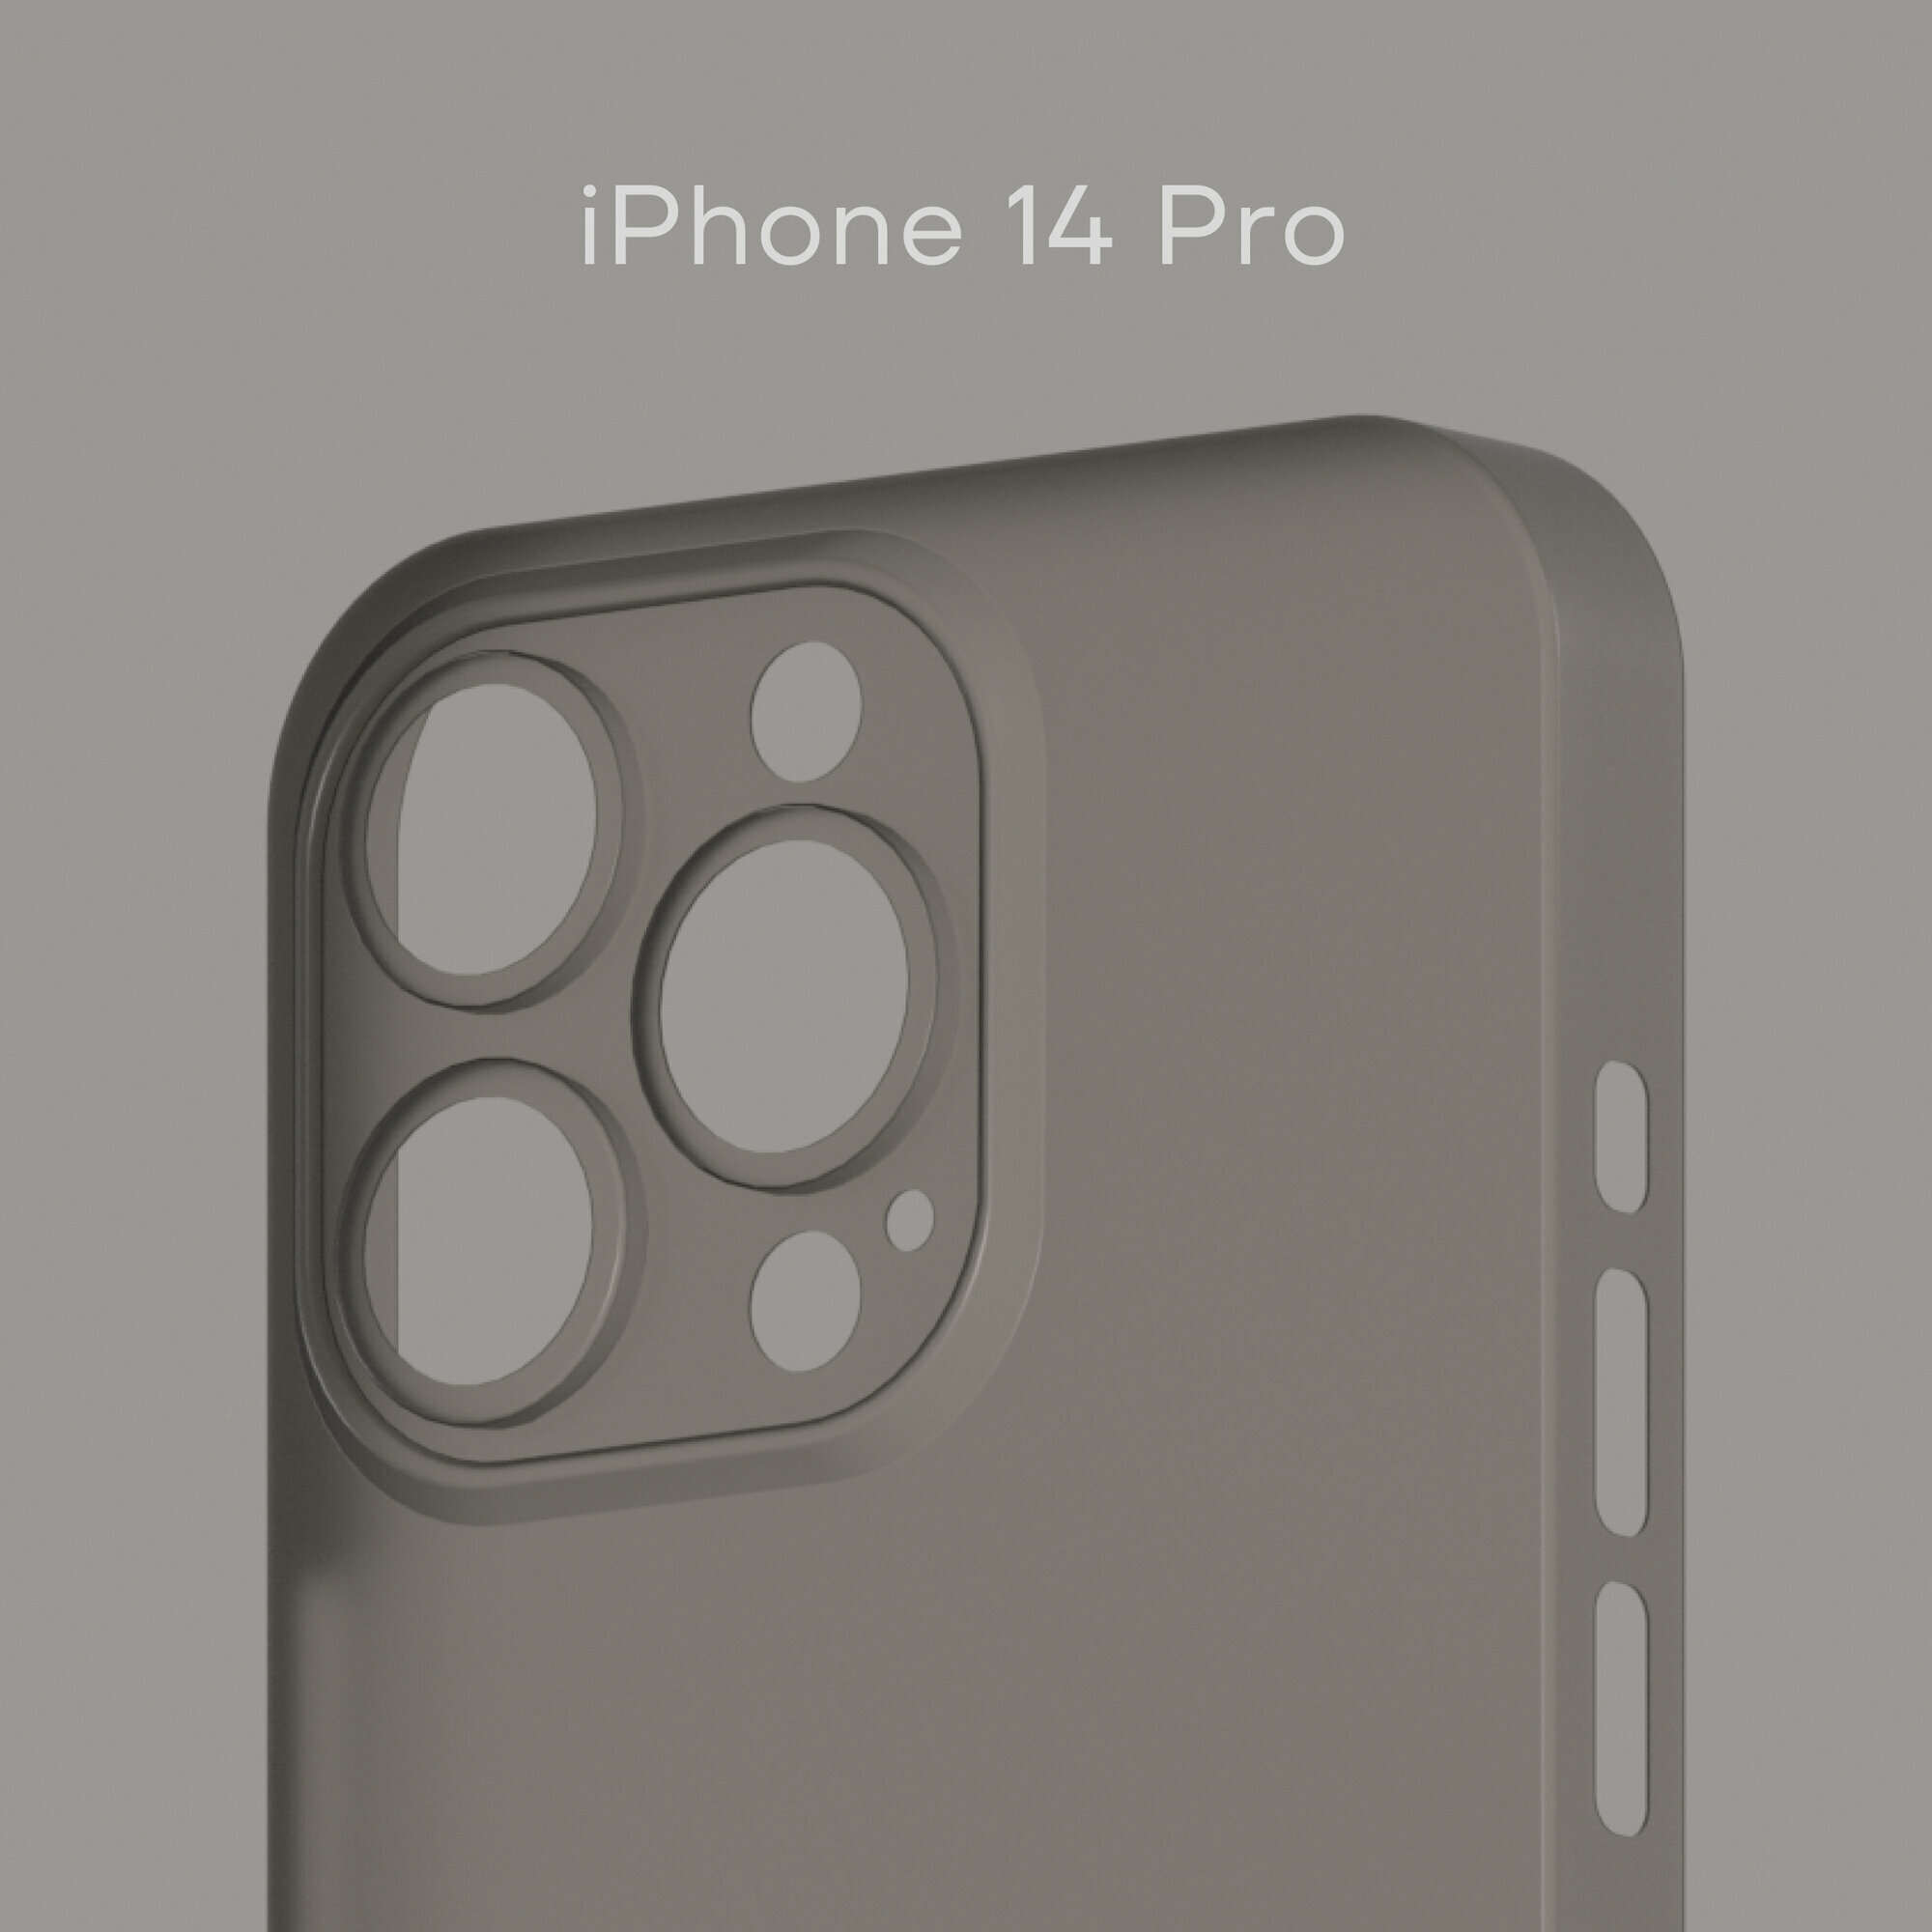 Тонкий чехол Уголок Air Case для iPhone 14 Pro / Айфон 14 Про толщиной 0,3 мм, прозрачный, матовый, пластиковый